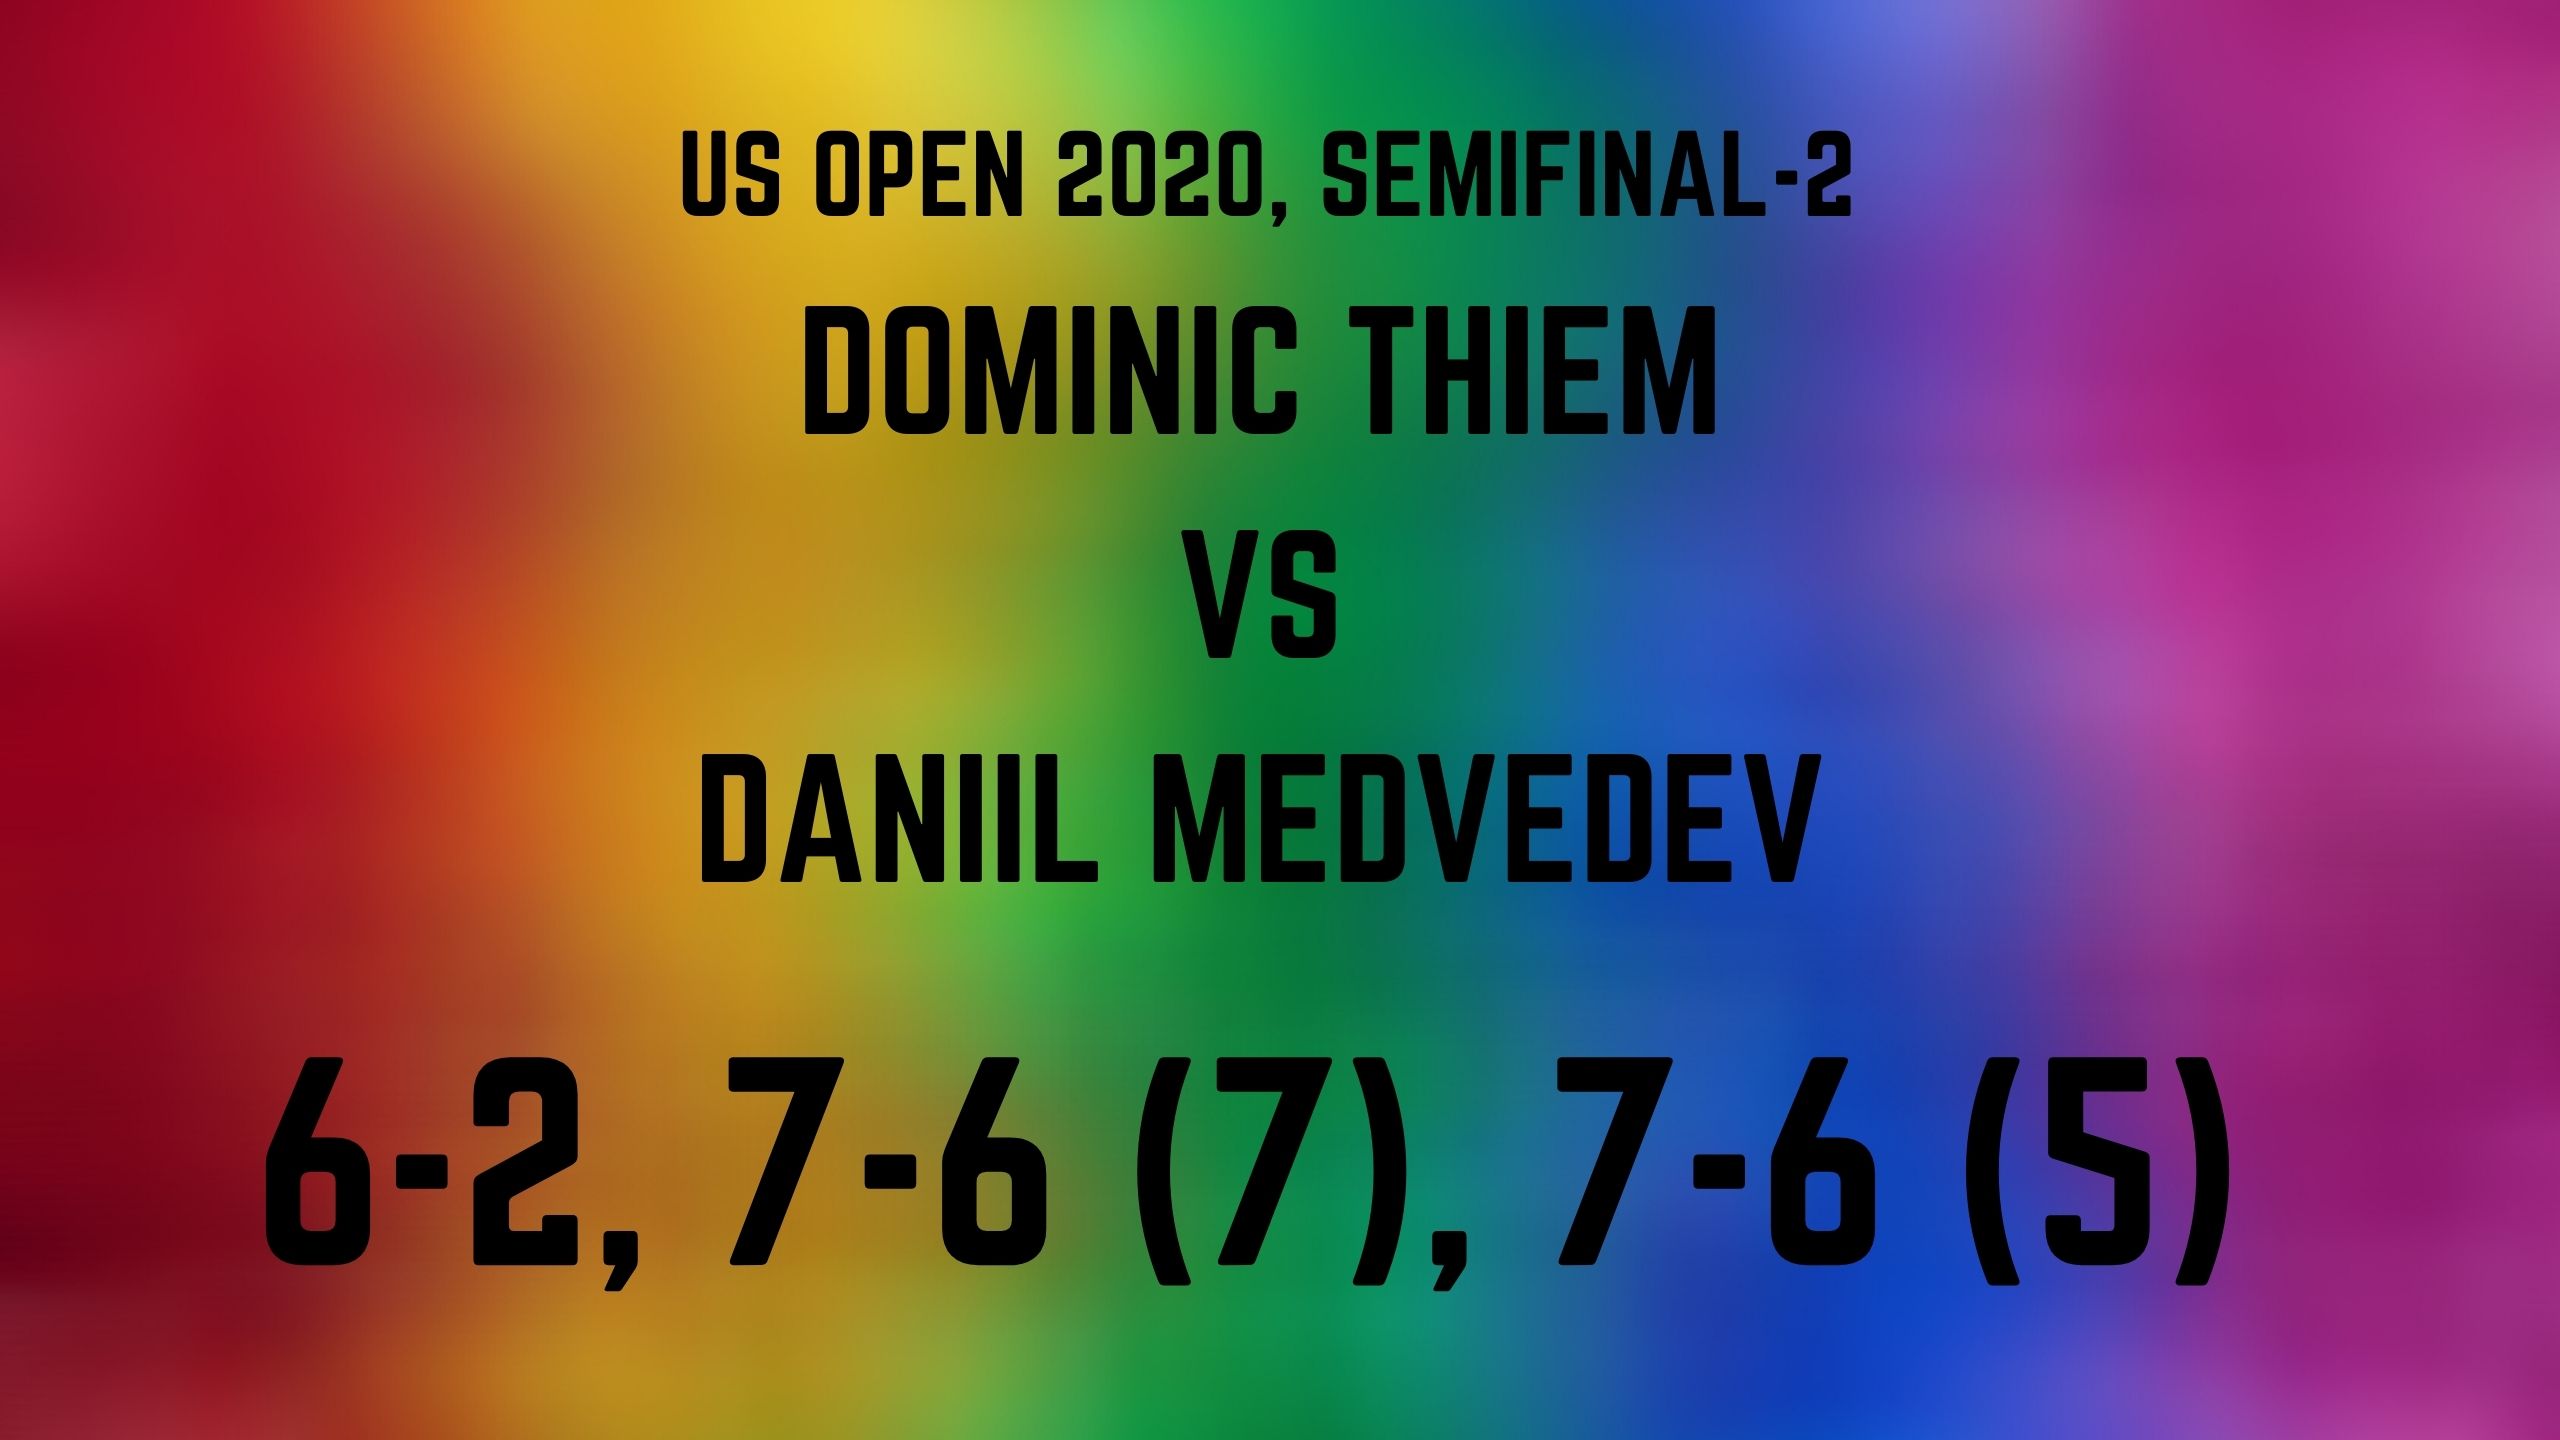 US Open 2020: Dominic Thiem beats Daniil Medvedev to set up men's singles final date with Alexander Zverev